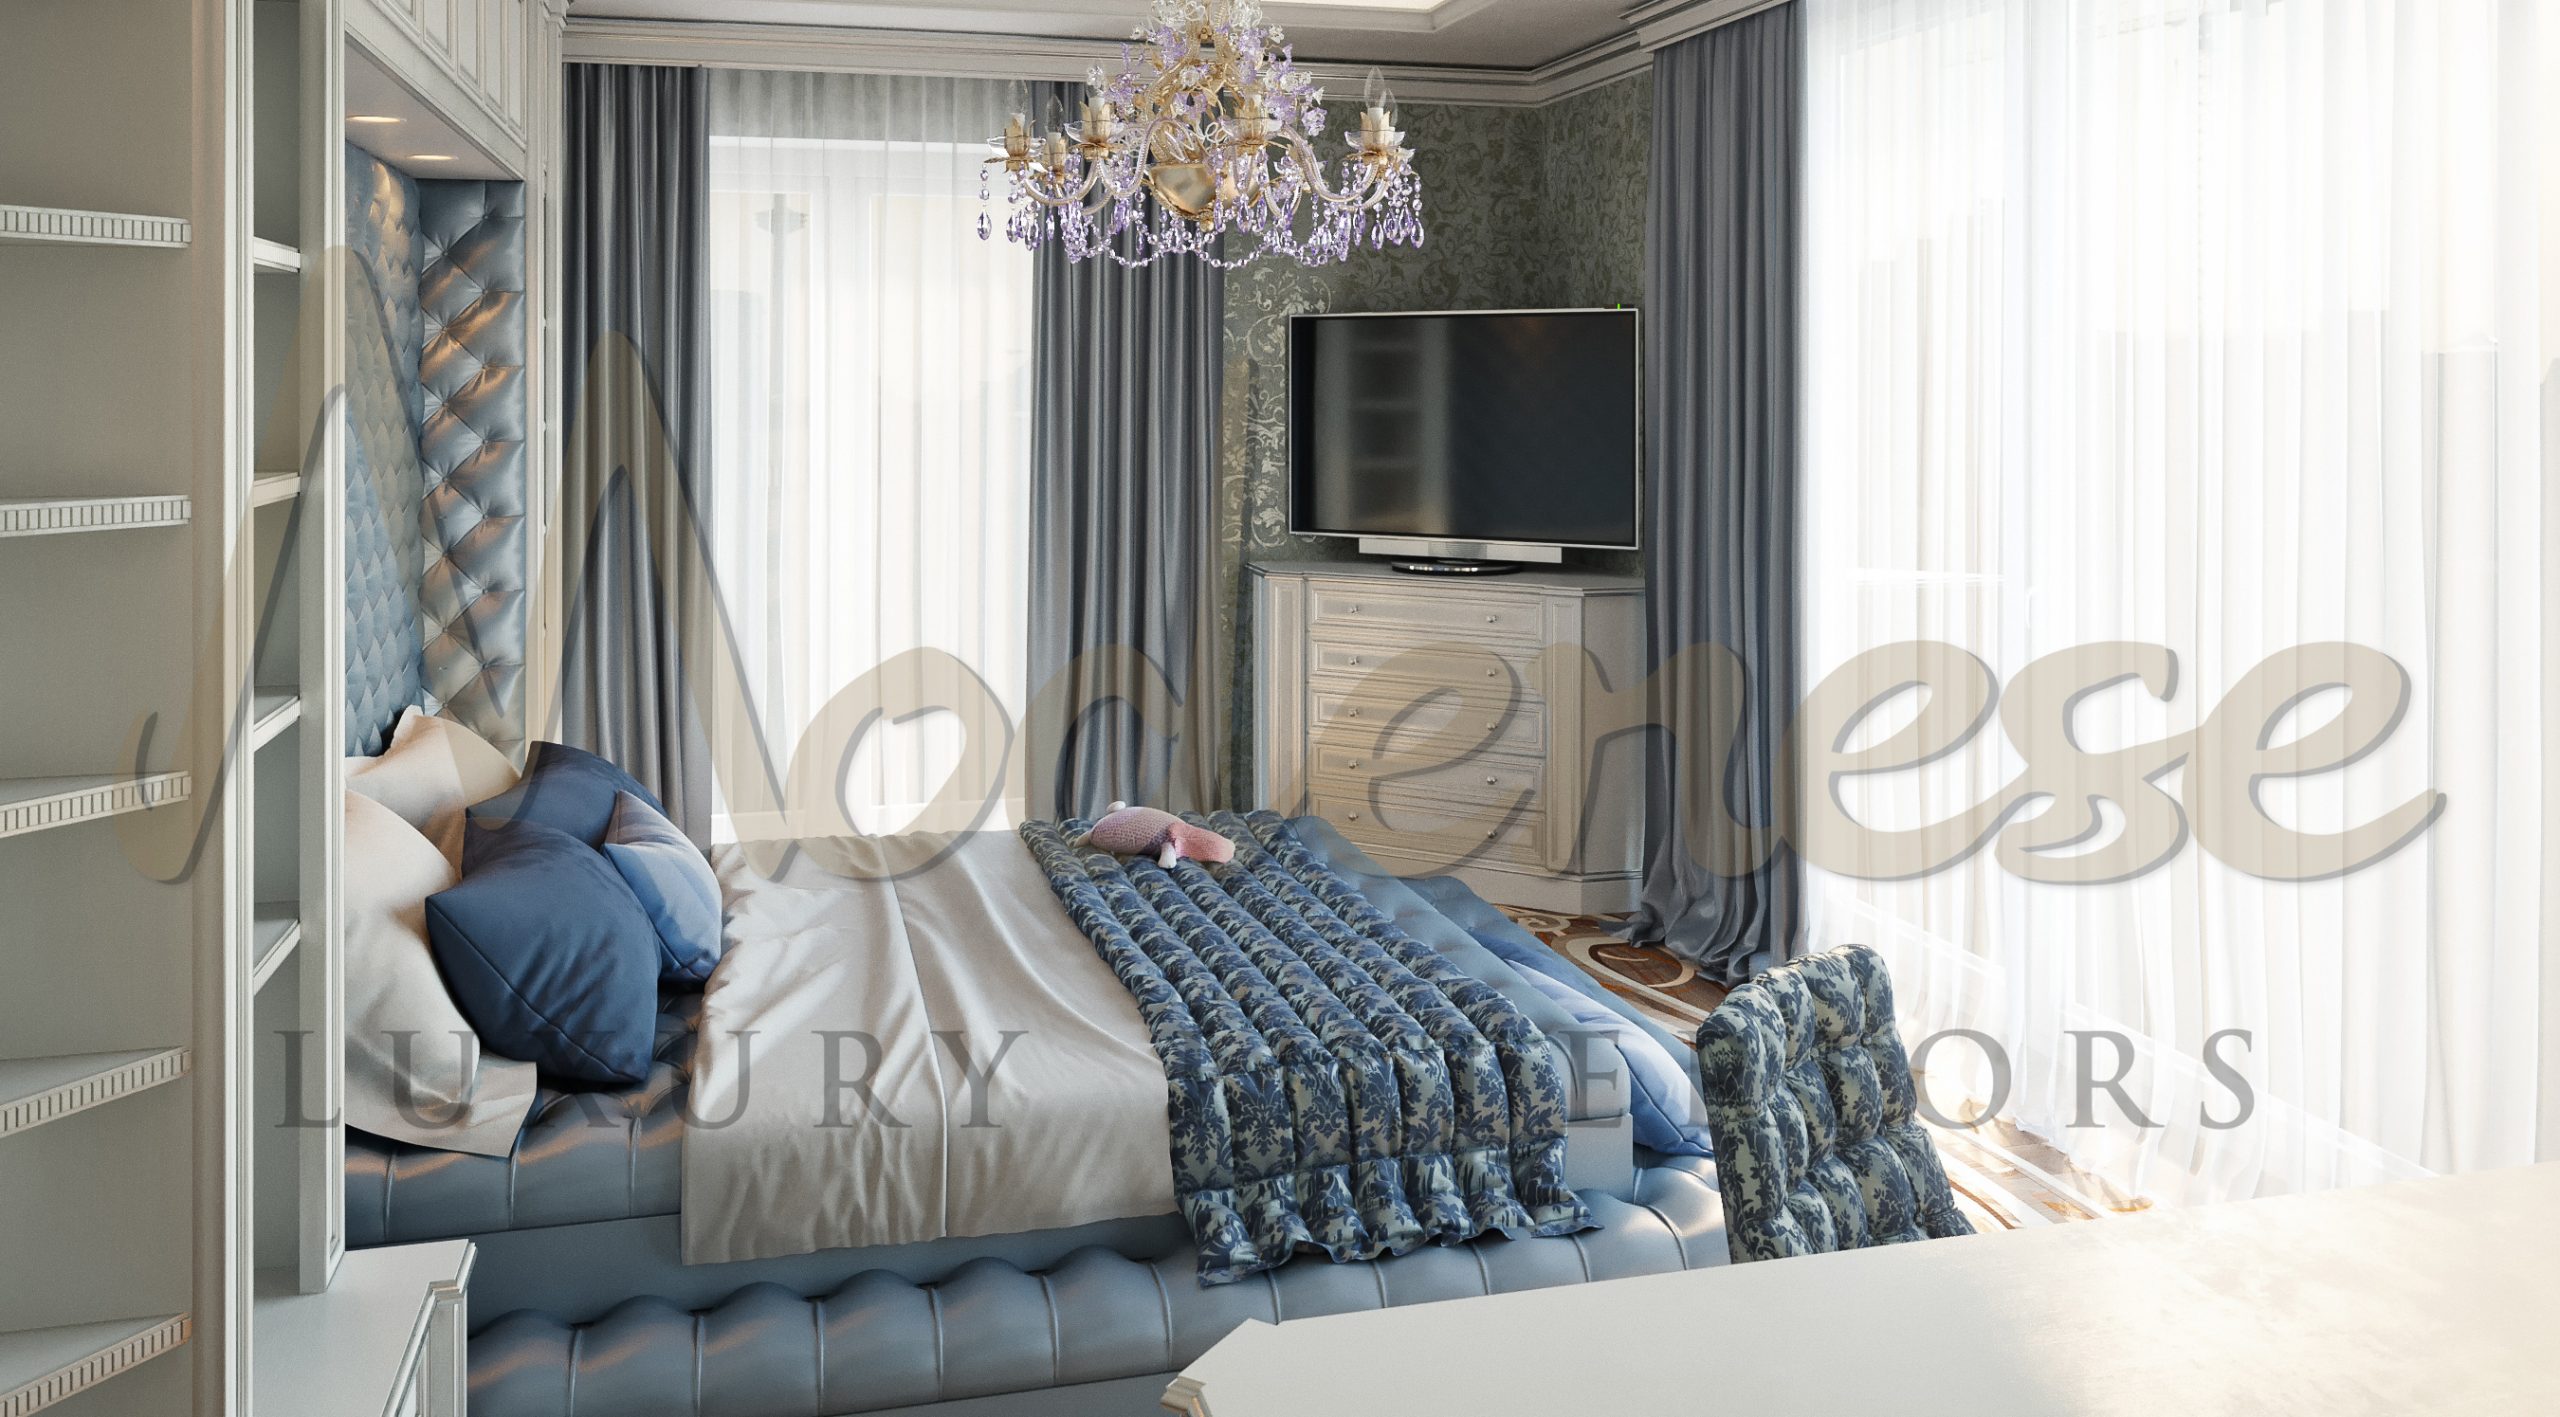 法国摩纳哥豪华别墅现代卧室设计